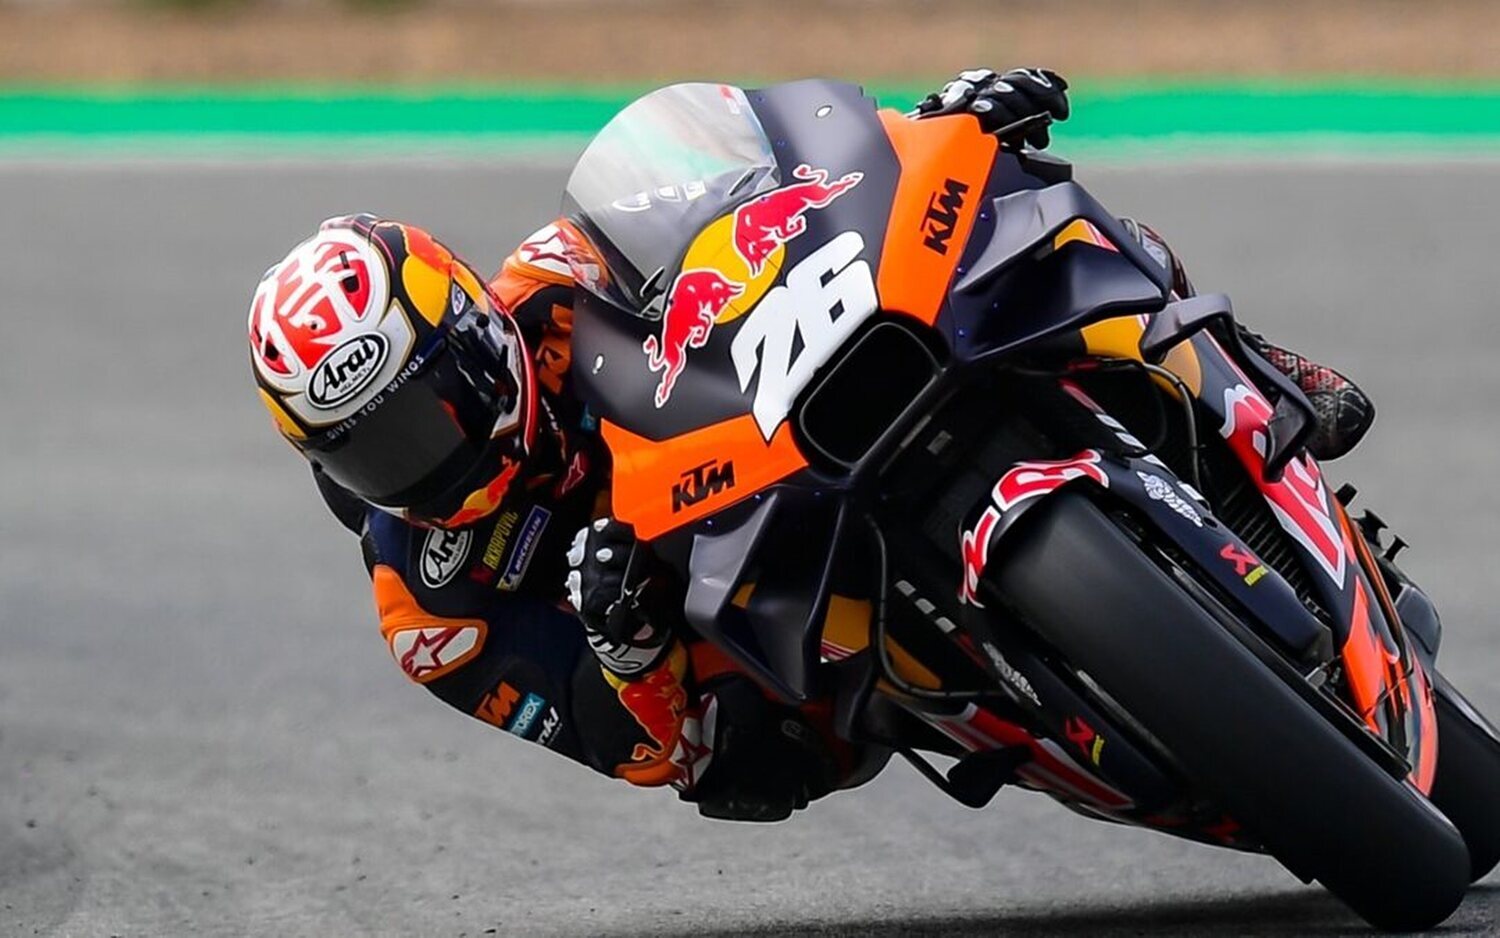 El Samurái Pedrosa vuelve por lo alto a MotoGP